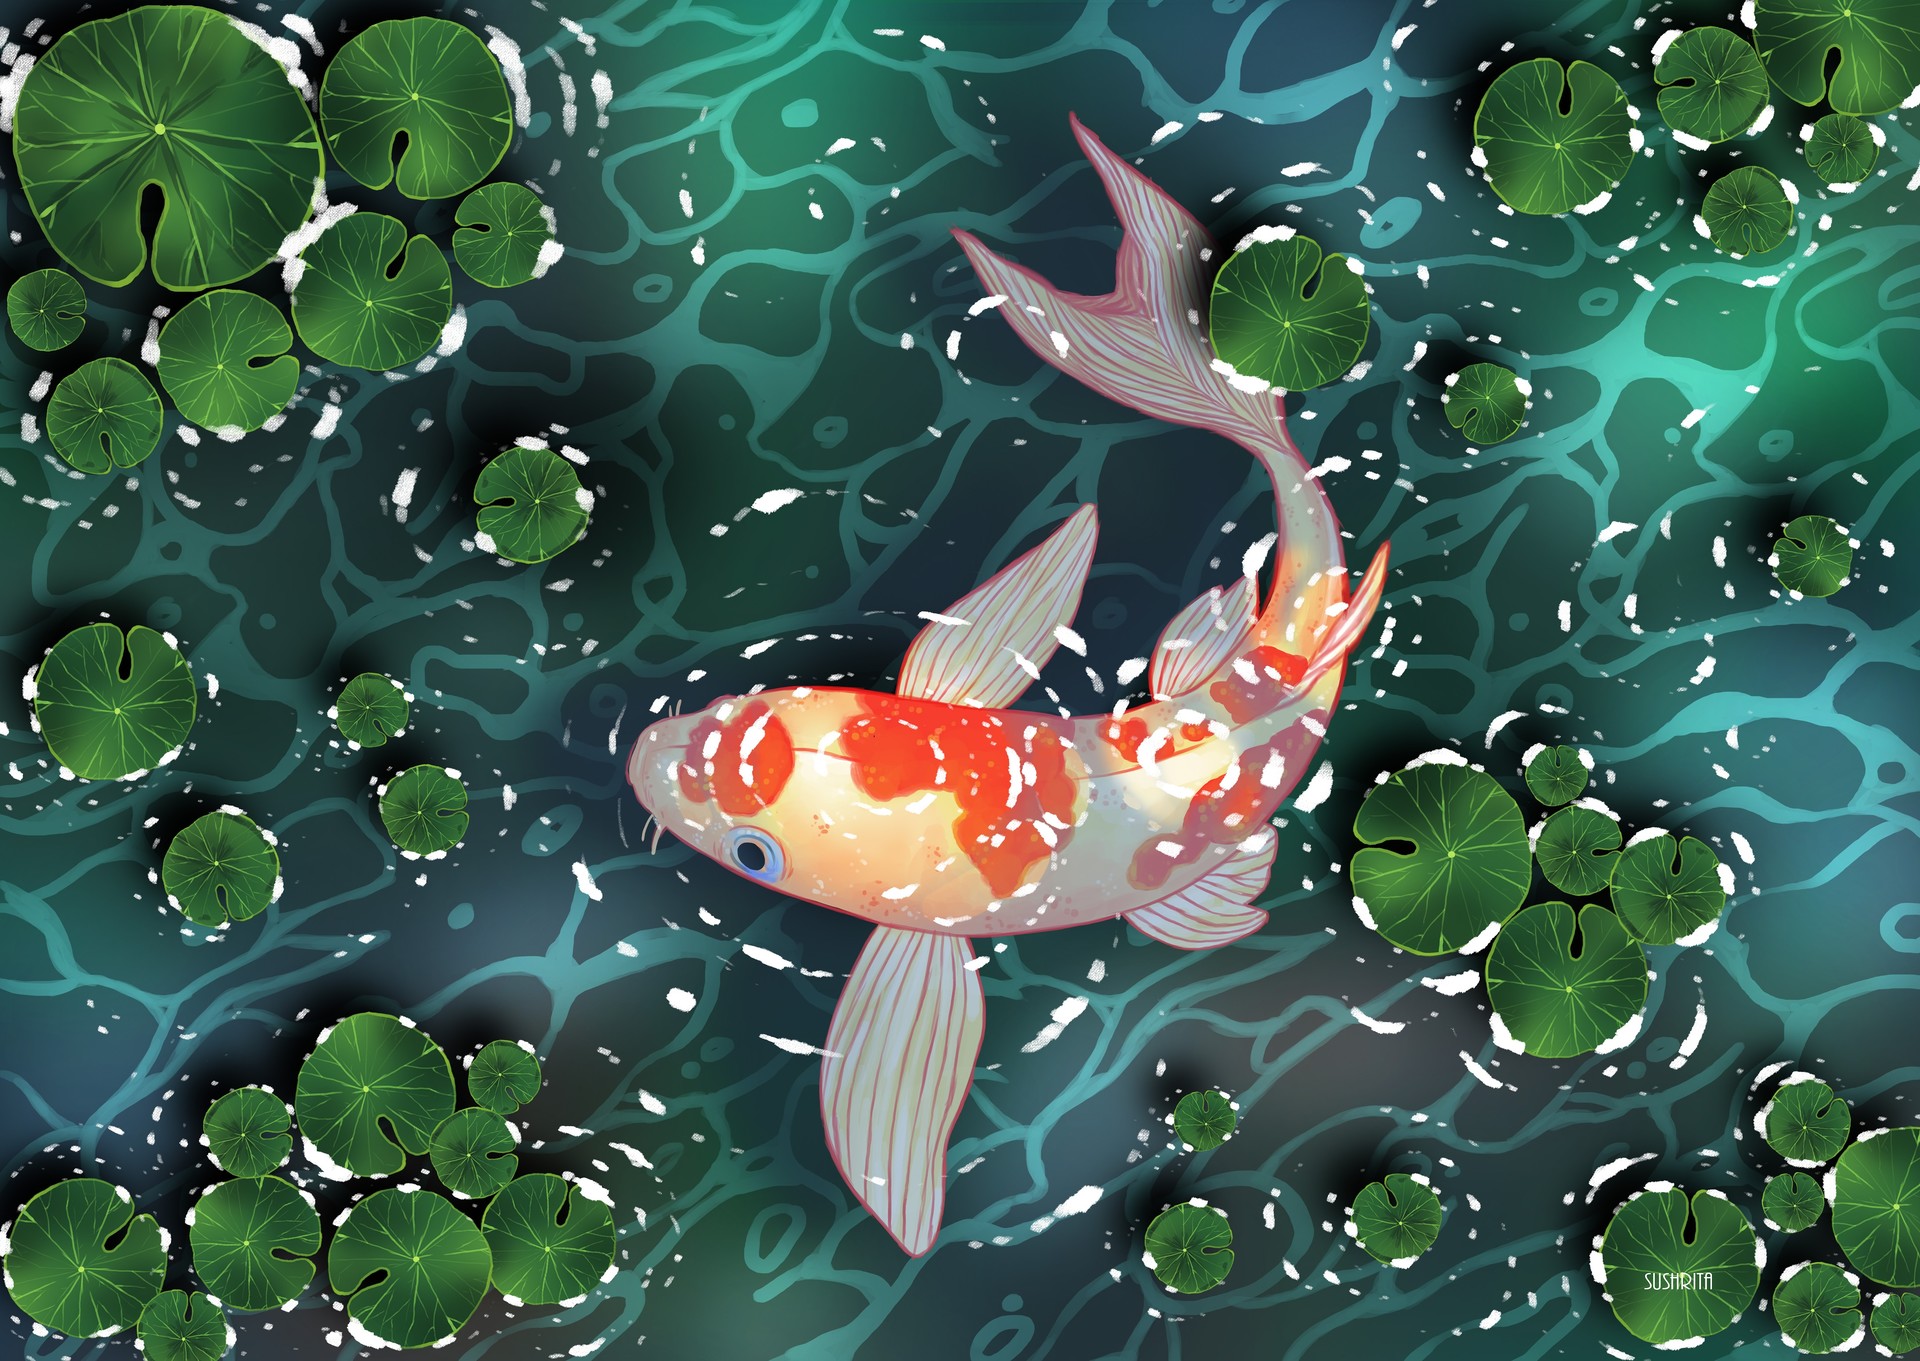 Картинки для канала ютуба с рыбками. Креативные картинки рыбы с вопросиками.